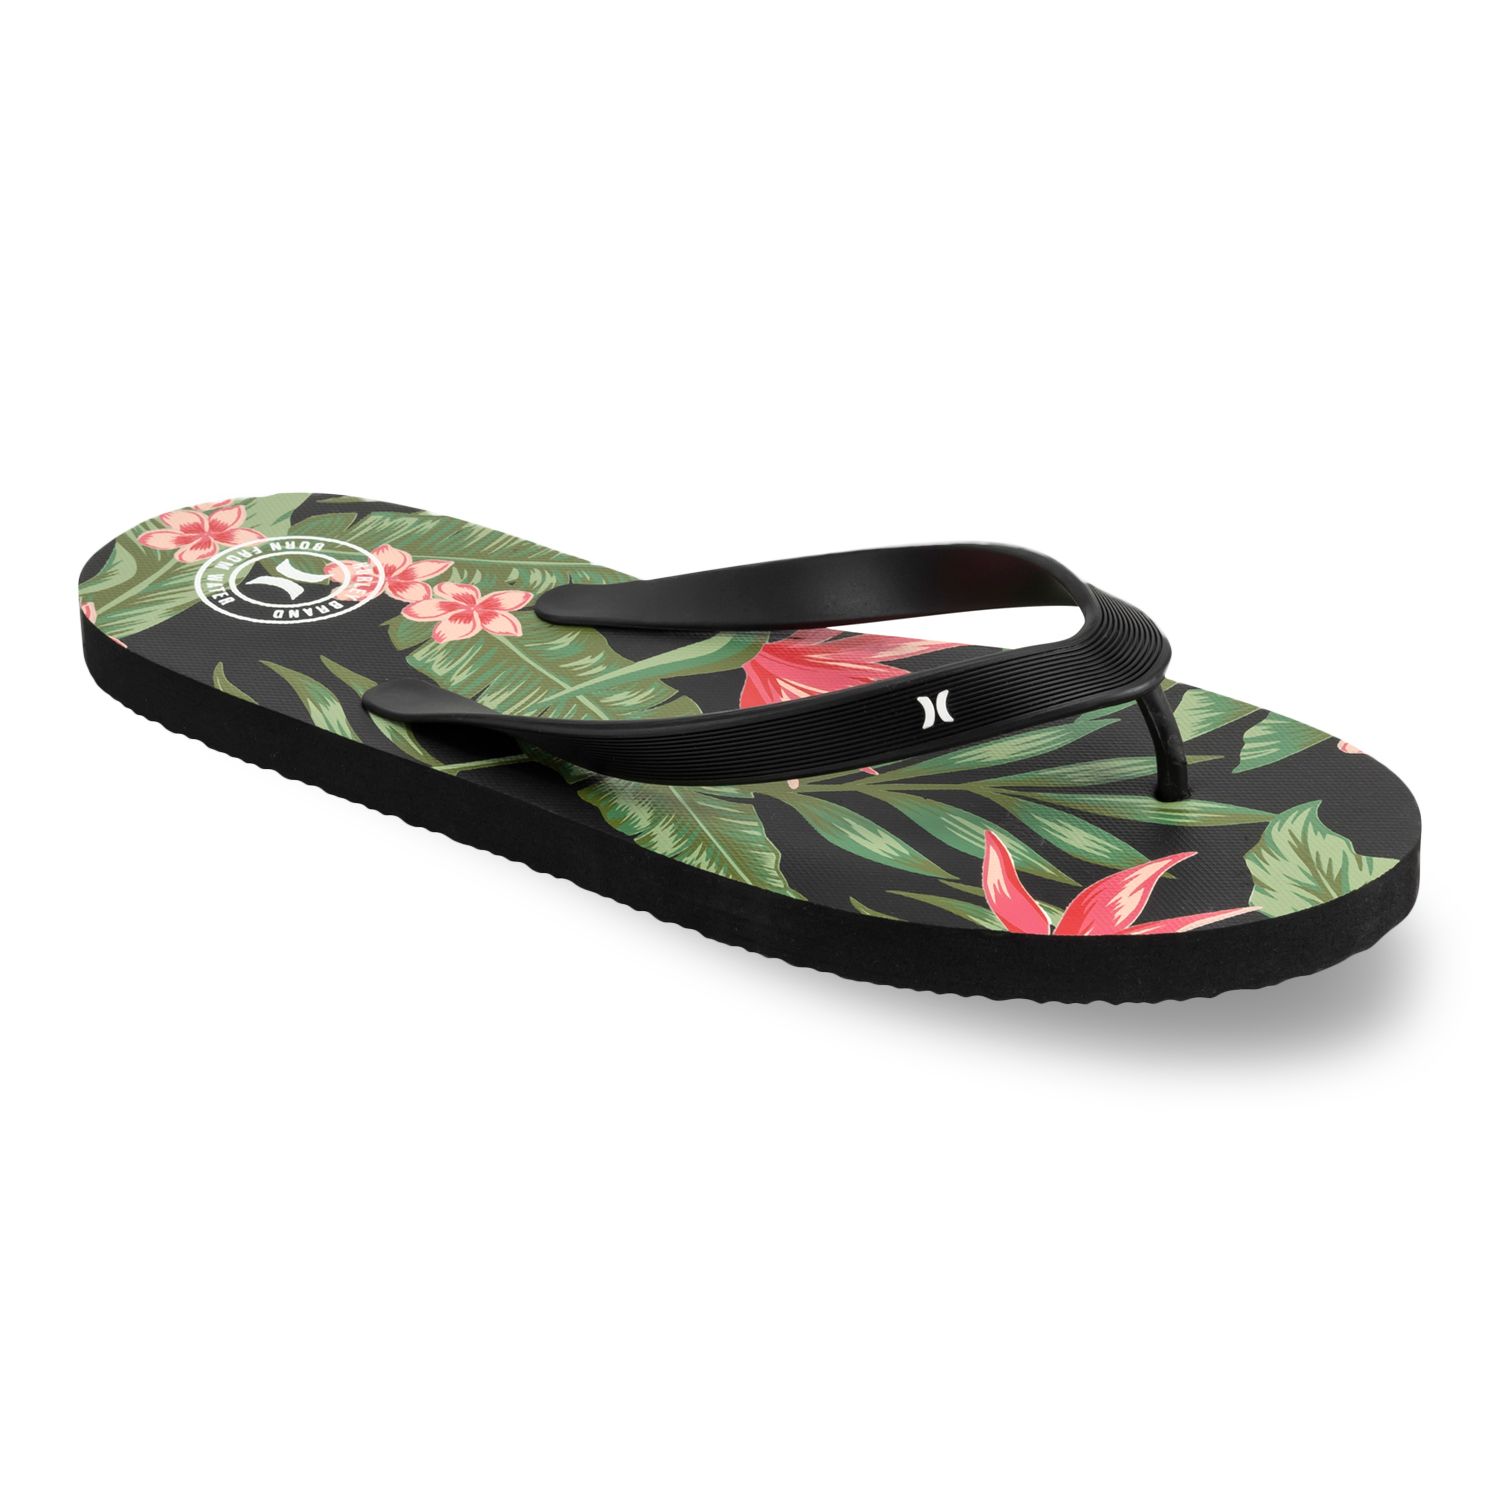 Image for Hurley Men's Tropical Flip Flop Sandals at Kohl's.